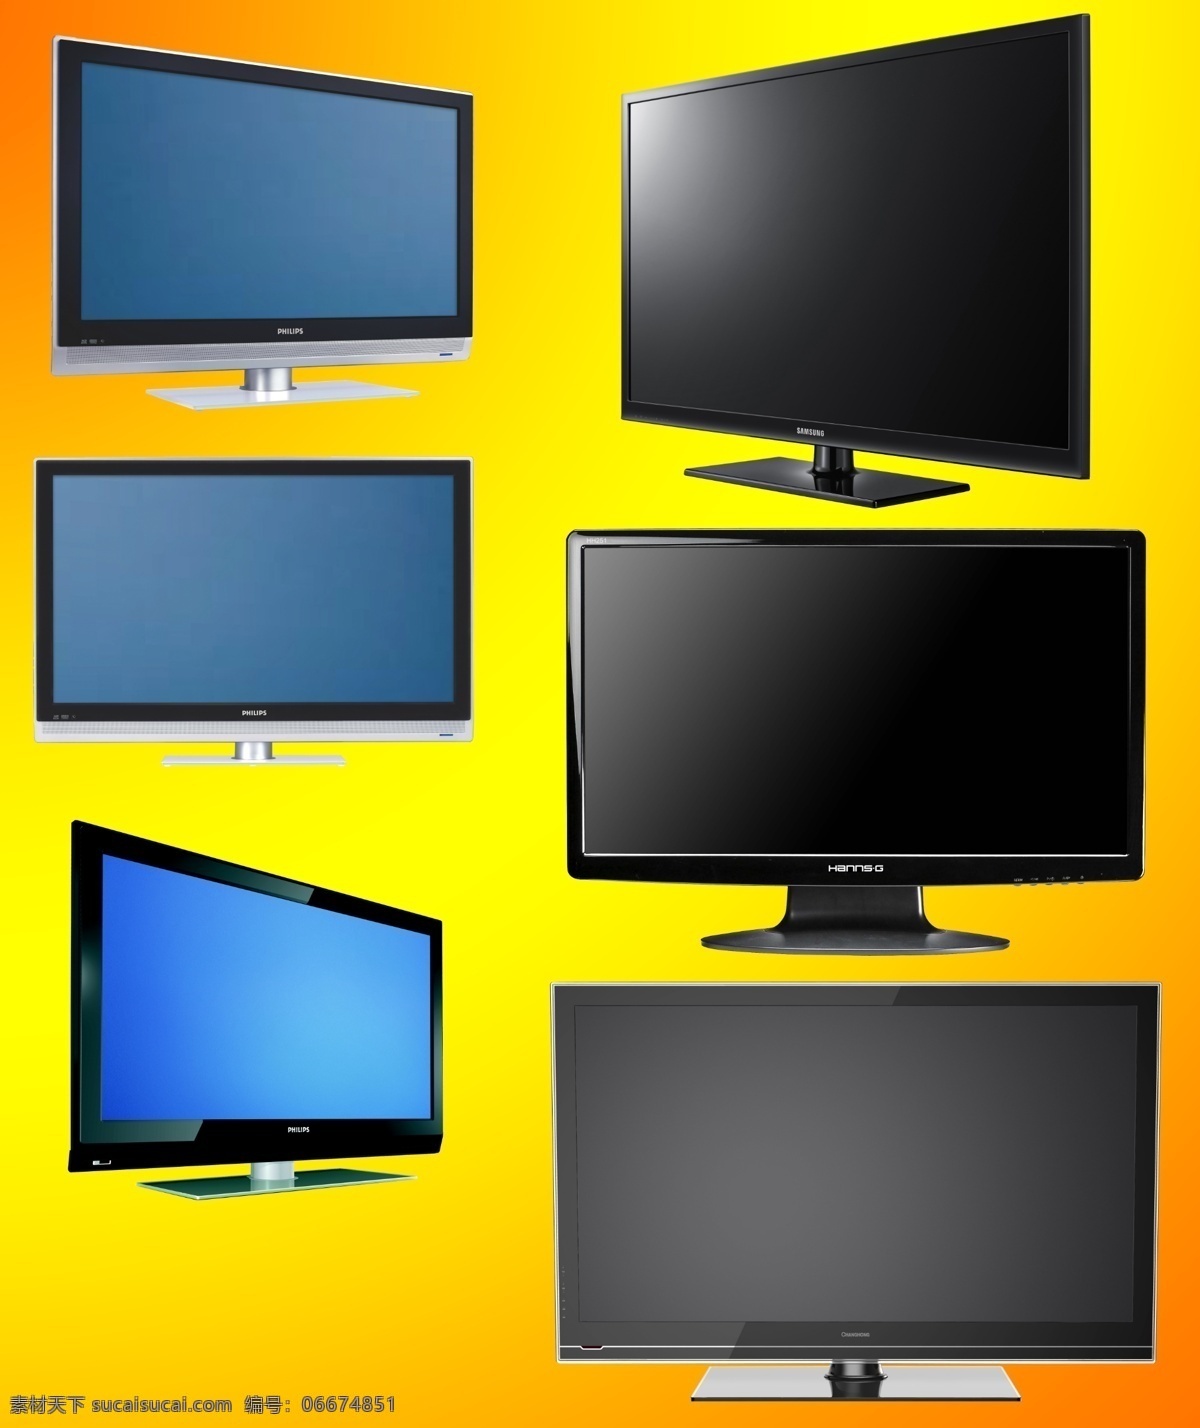 液晶电视 电视 显示器 液晶显示器 平板电视 电器 家用电器 分层 源文件